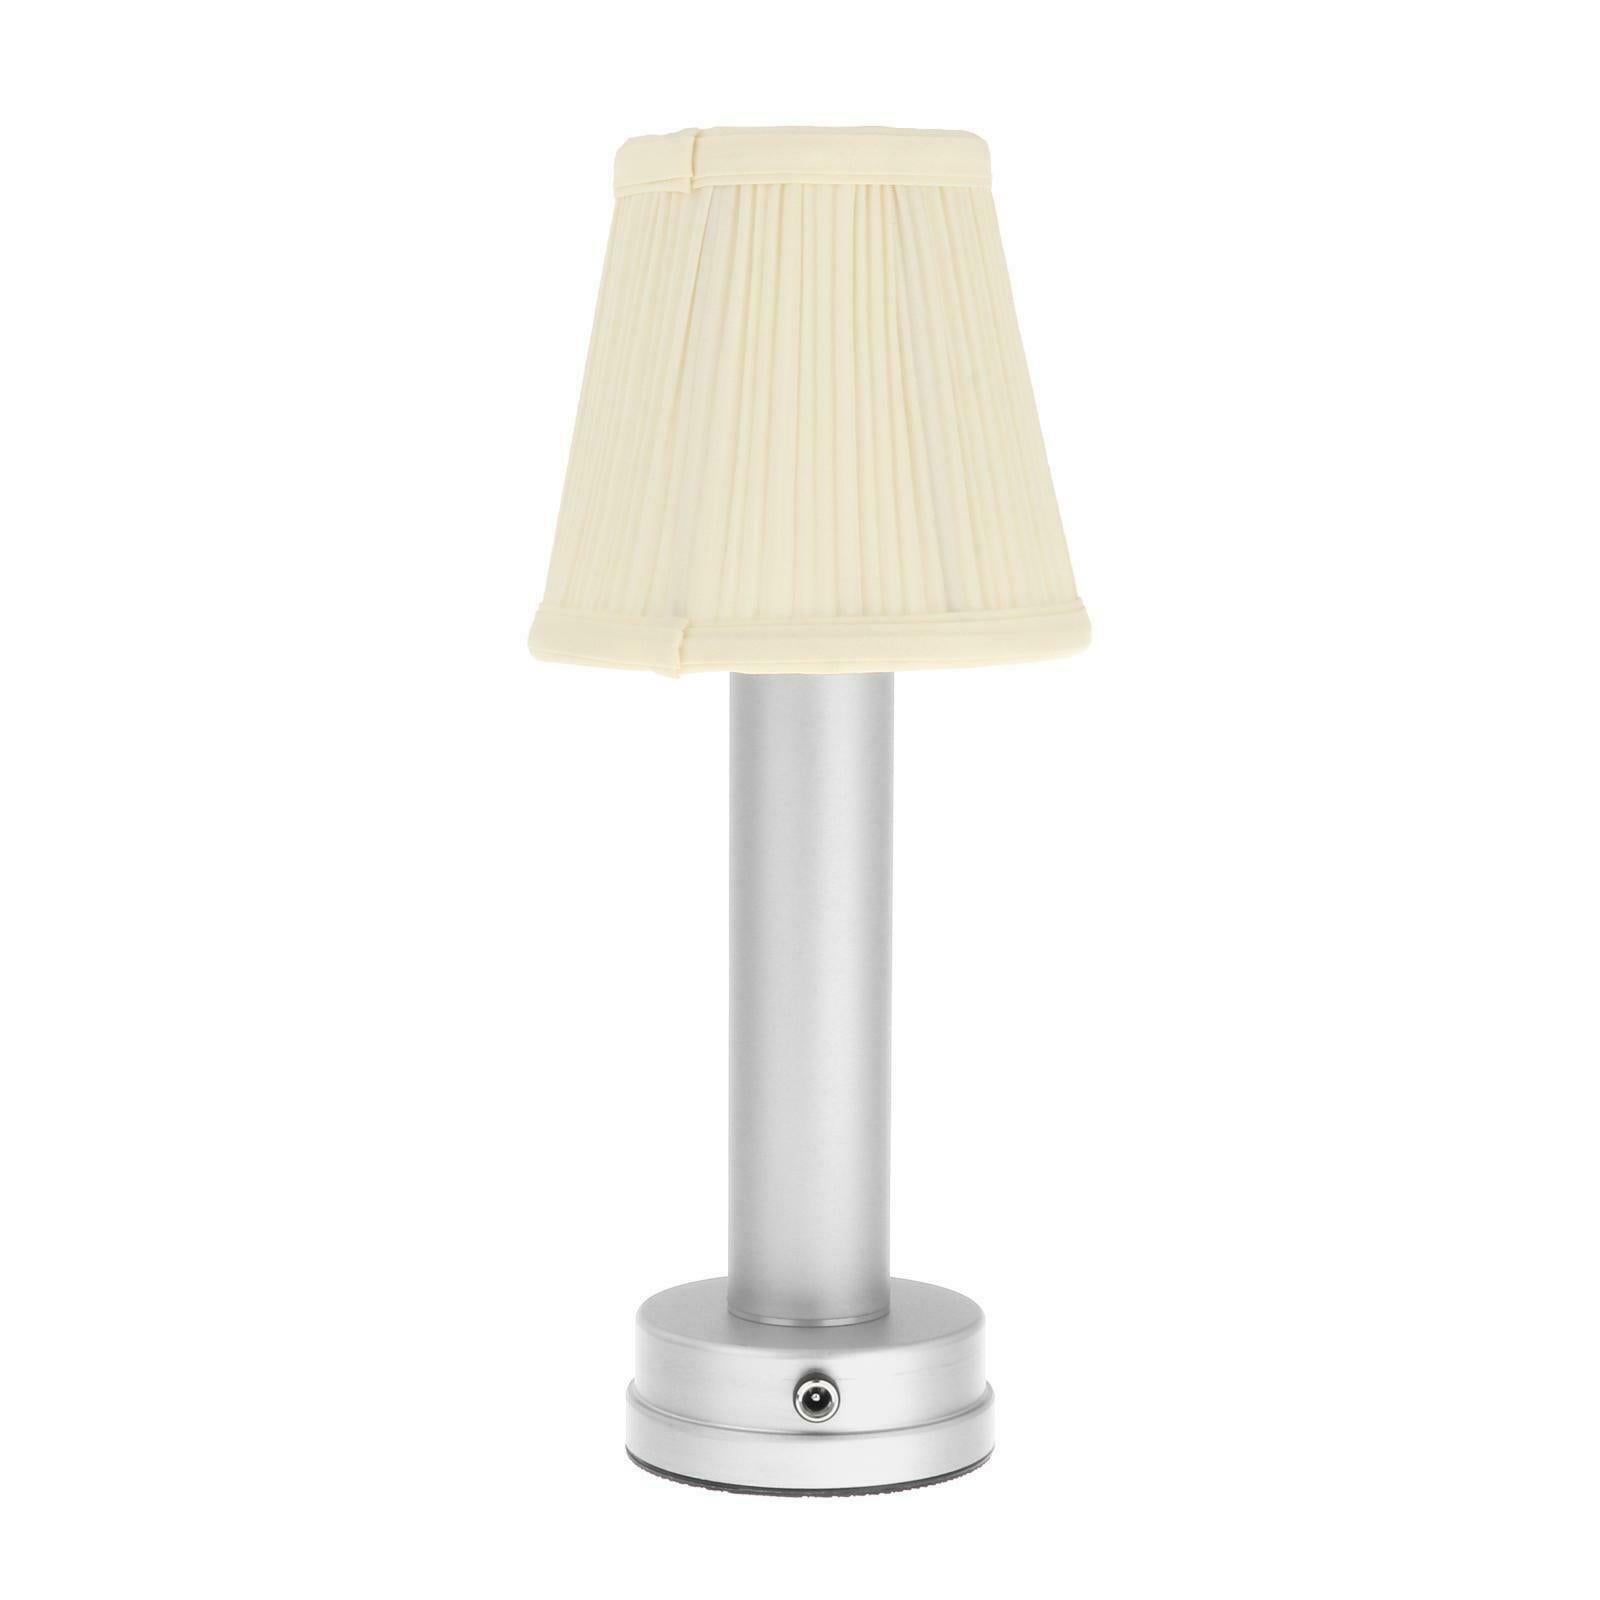 Iron Cordless Mini Table Lamp LED Lamp Reading Light Night Light Living Room